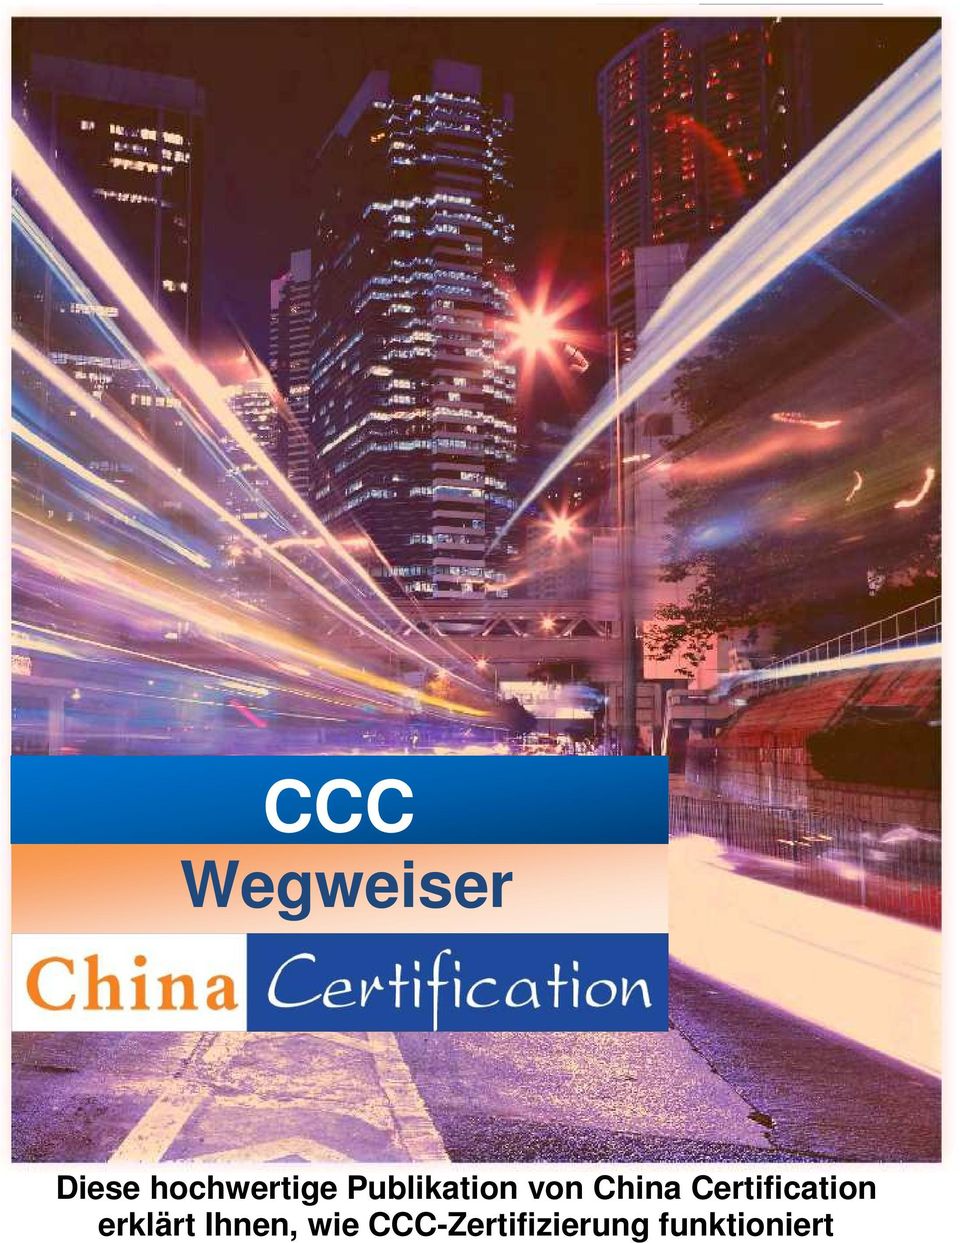 CCC-Zertifizierung funktioniert 2014 - MPR GmbH -